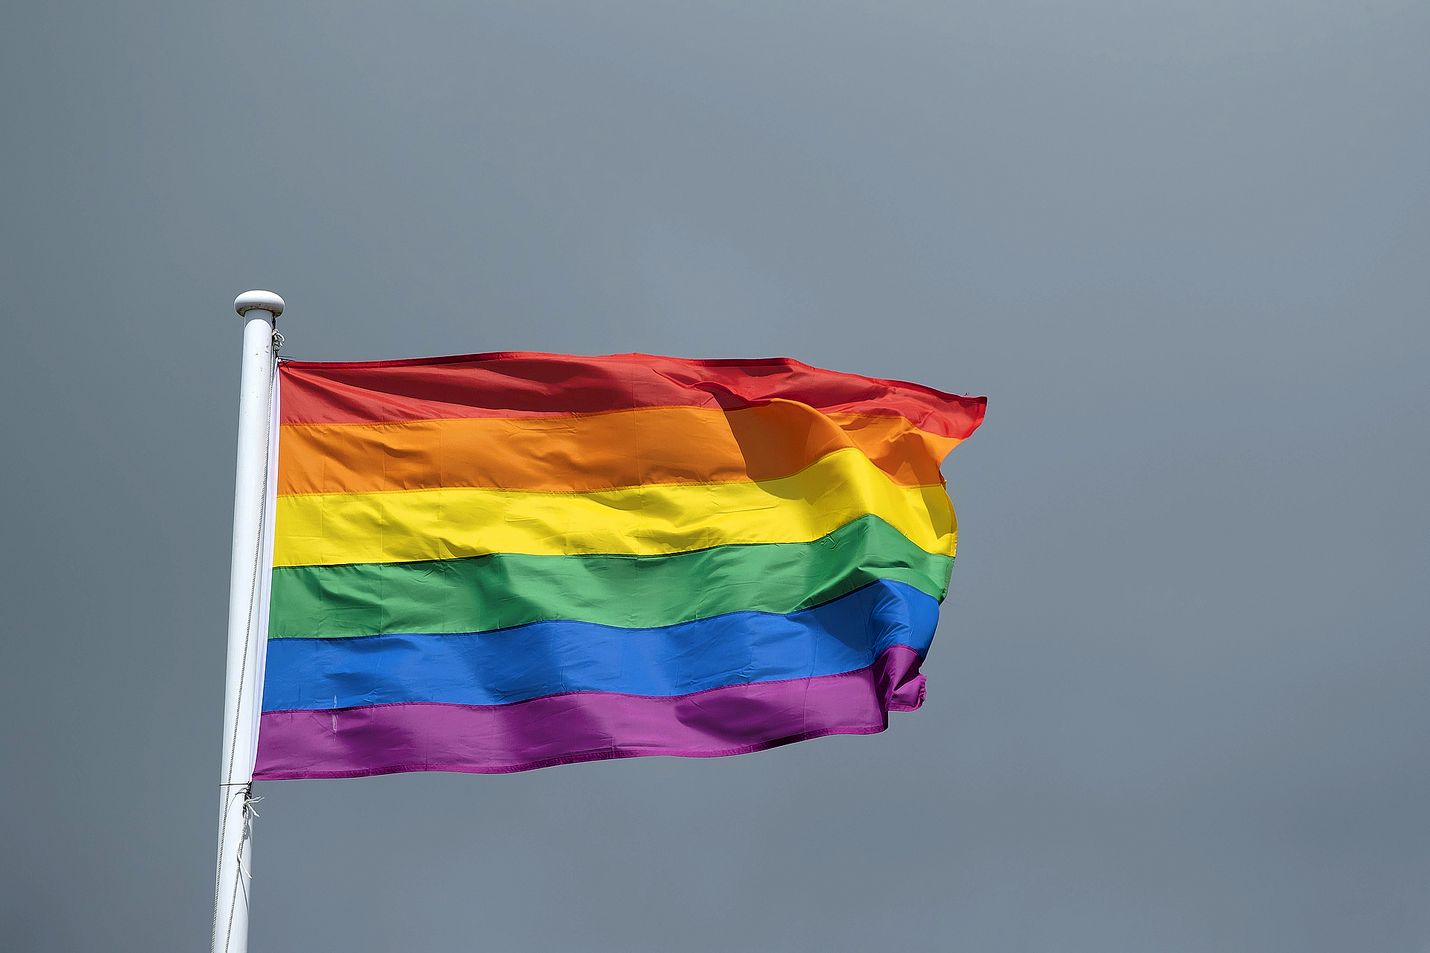 Seksuaalivähemmistöjen sateenkaari- eli Pride-lippu nousee Rauman kaupungintalon edustan salkoon ensi vuonna.